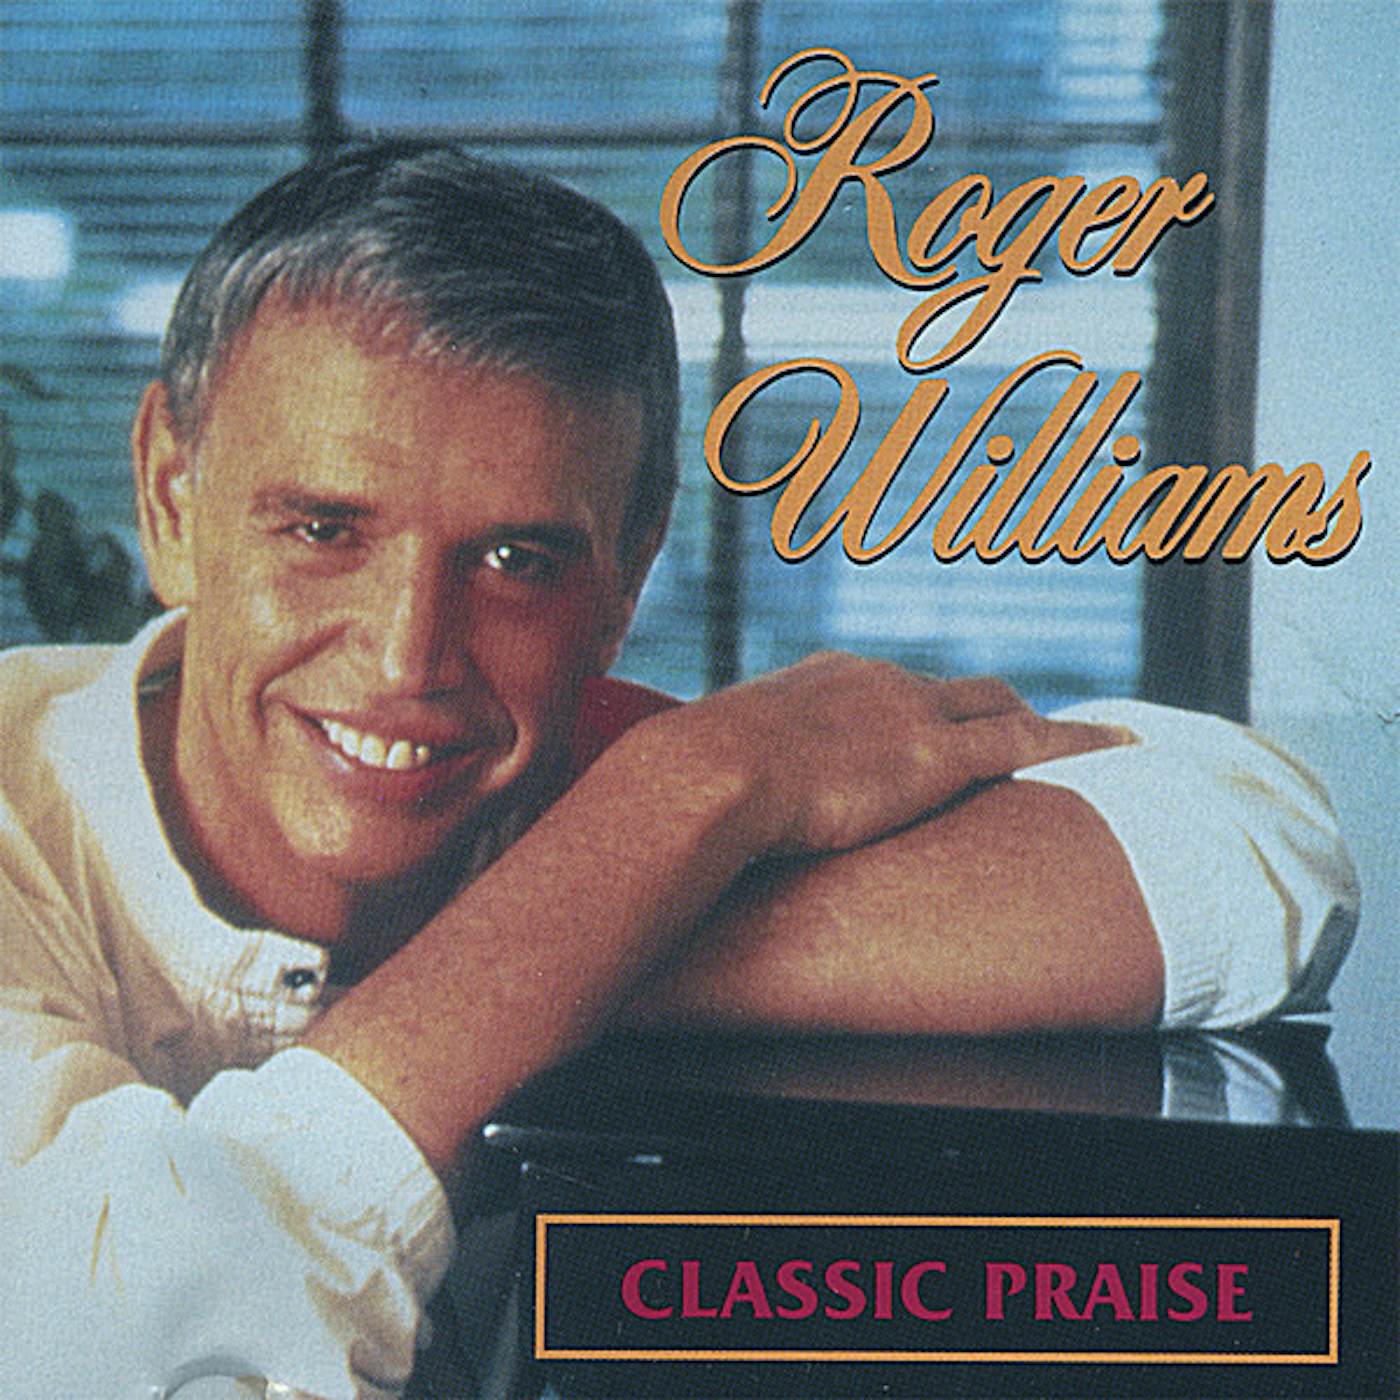 Roger Williams CLASSIC PRAISE CD